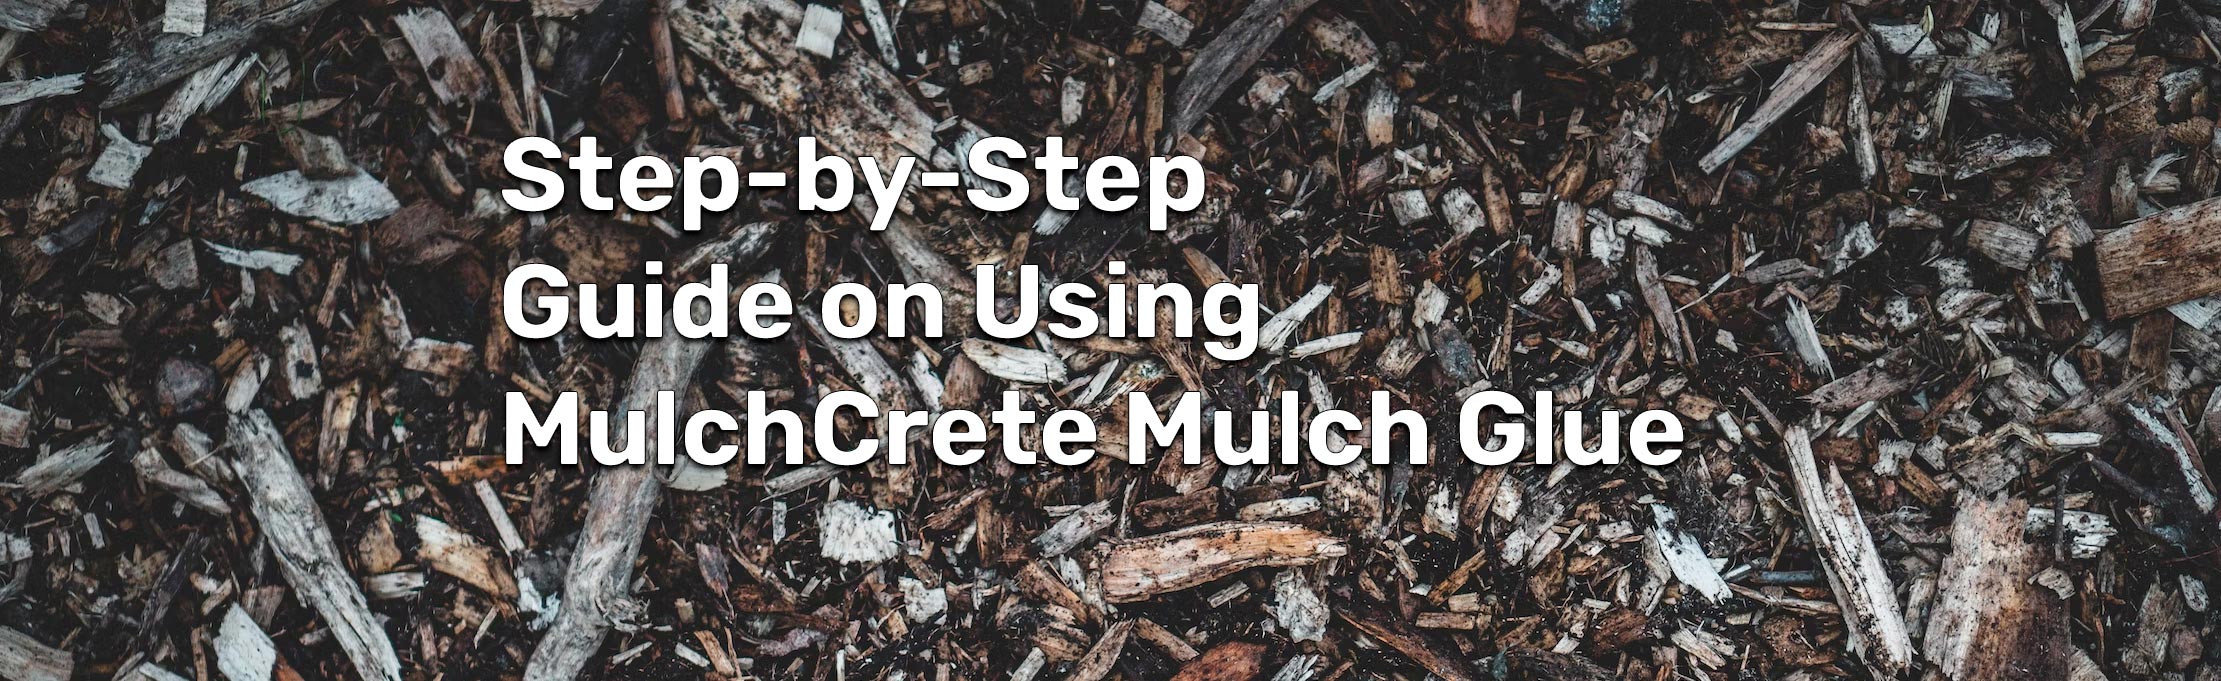 Step-by-Step Guide on Using MulchCrete Mulch Glue - Mulch Glue